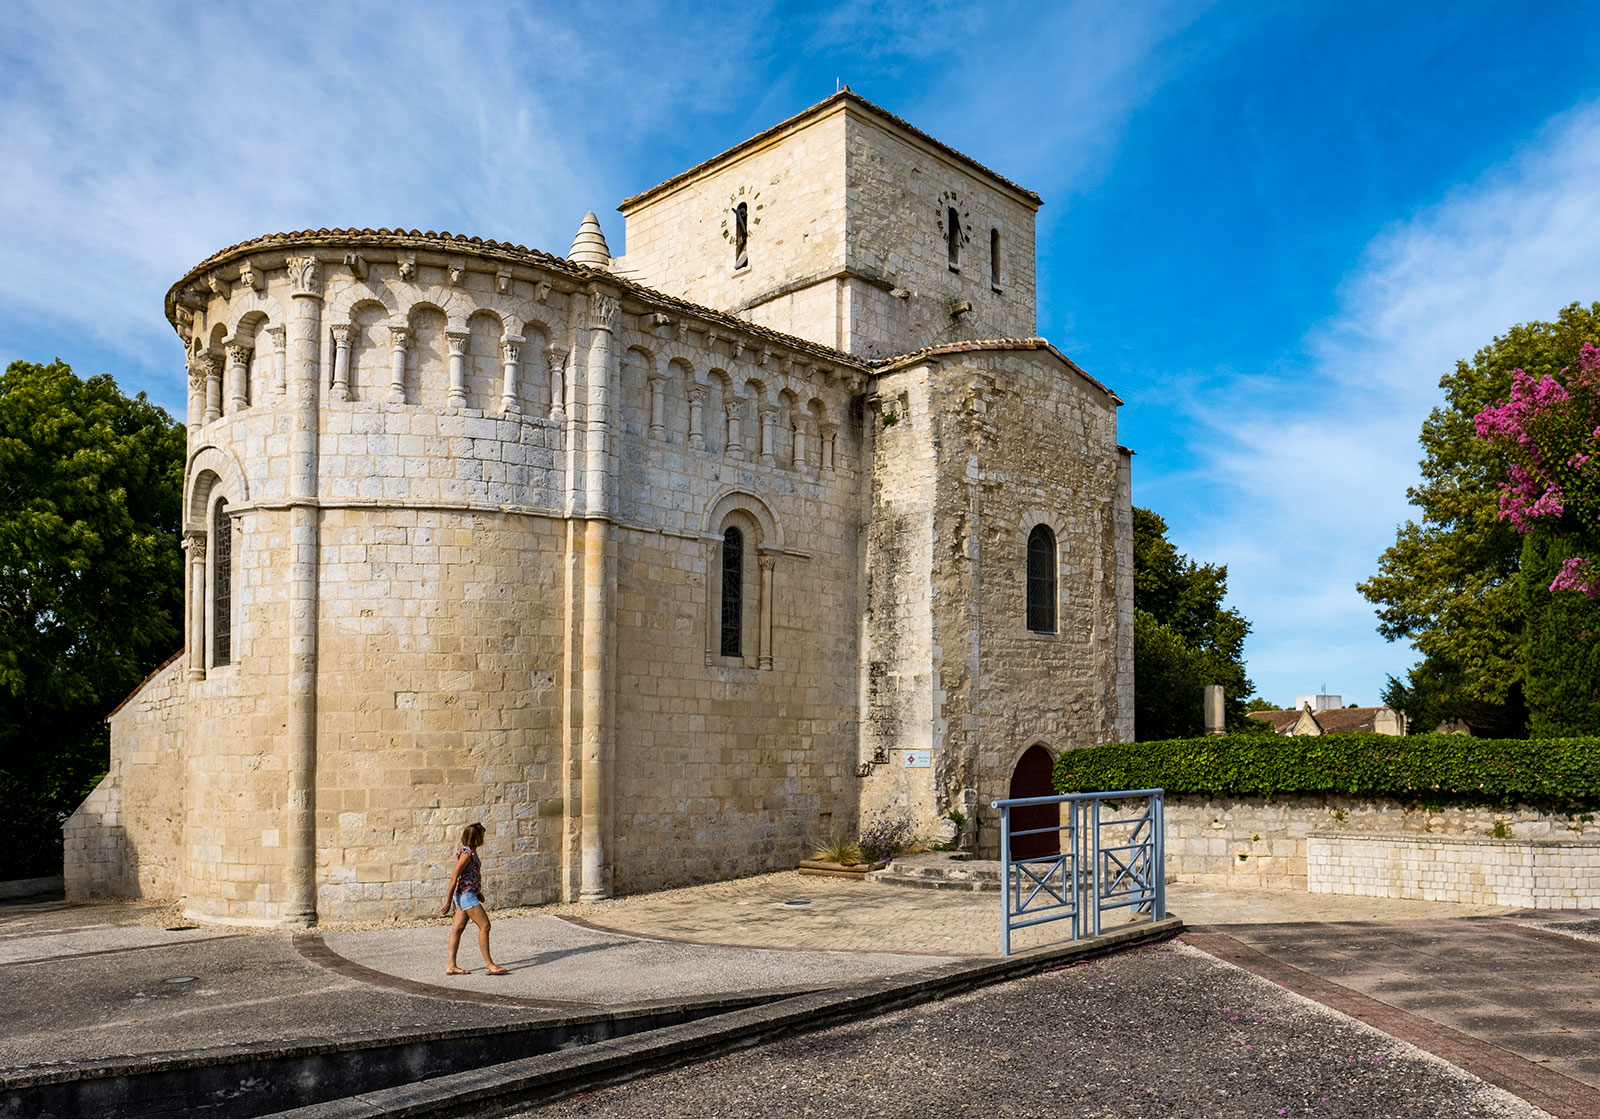 the Romanesque church of Saint-Etienne in Vaux-sur-Mer